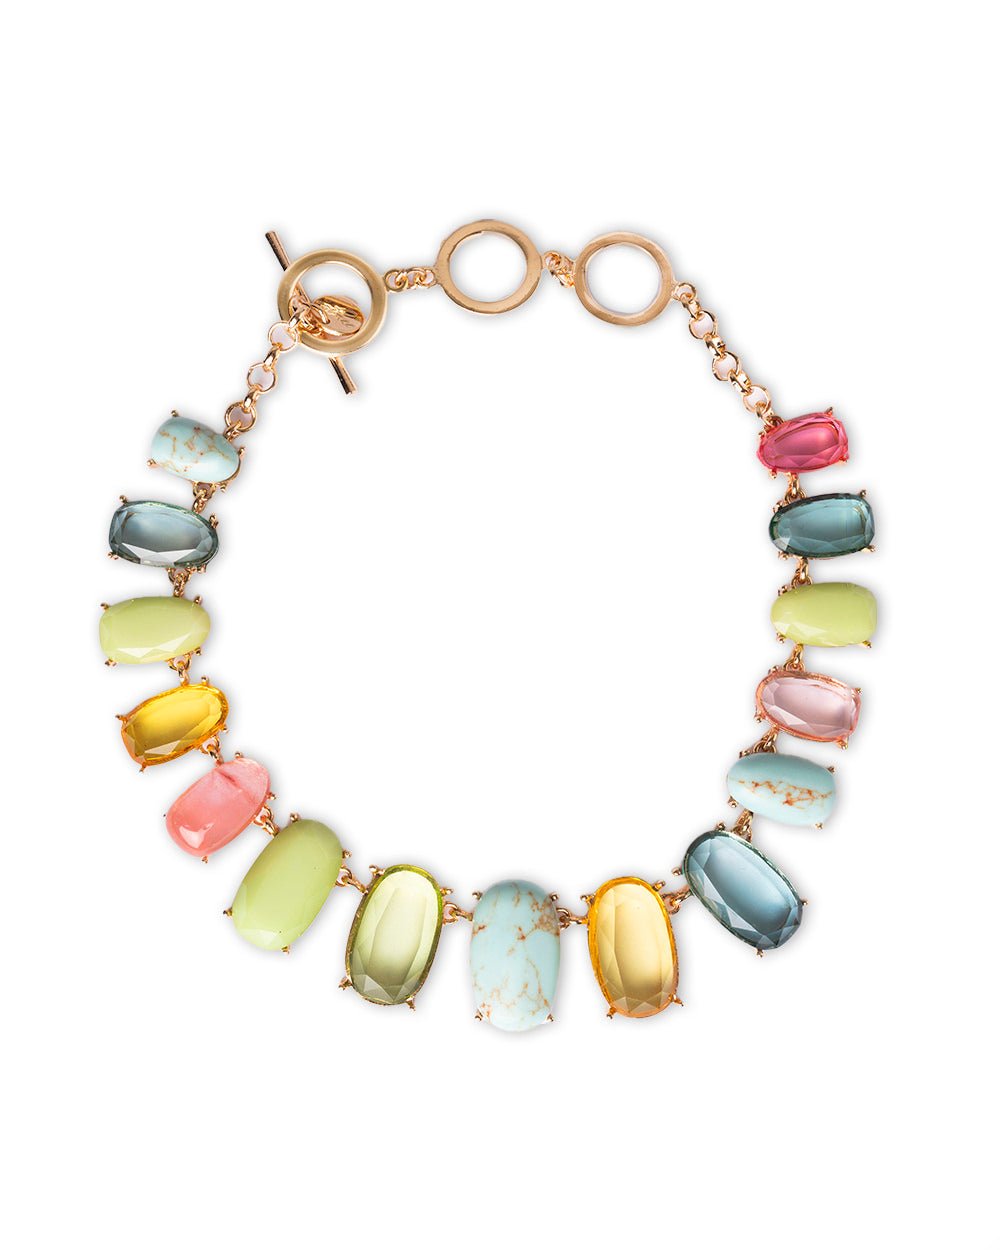 Collana girocollo con pietre in vetro e resina multicolore - Mya Accessories